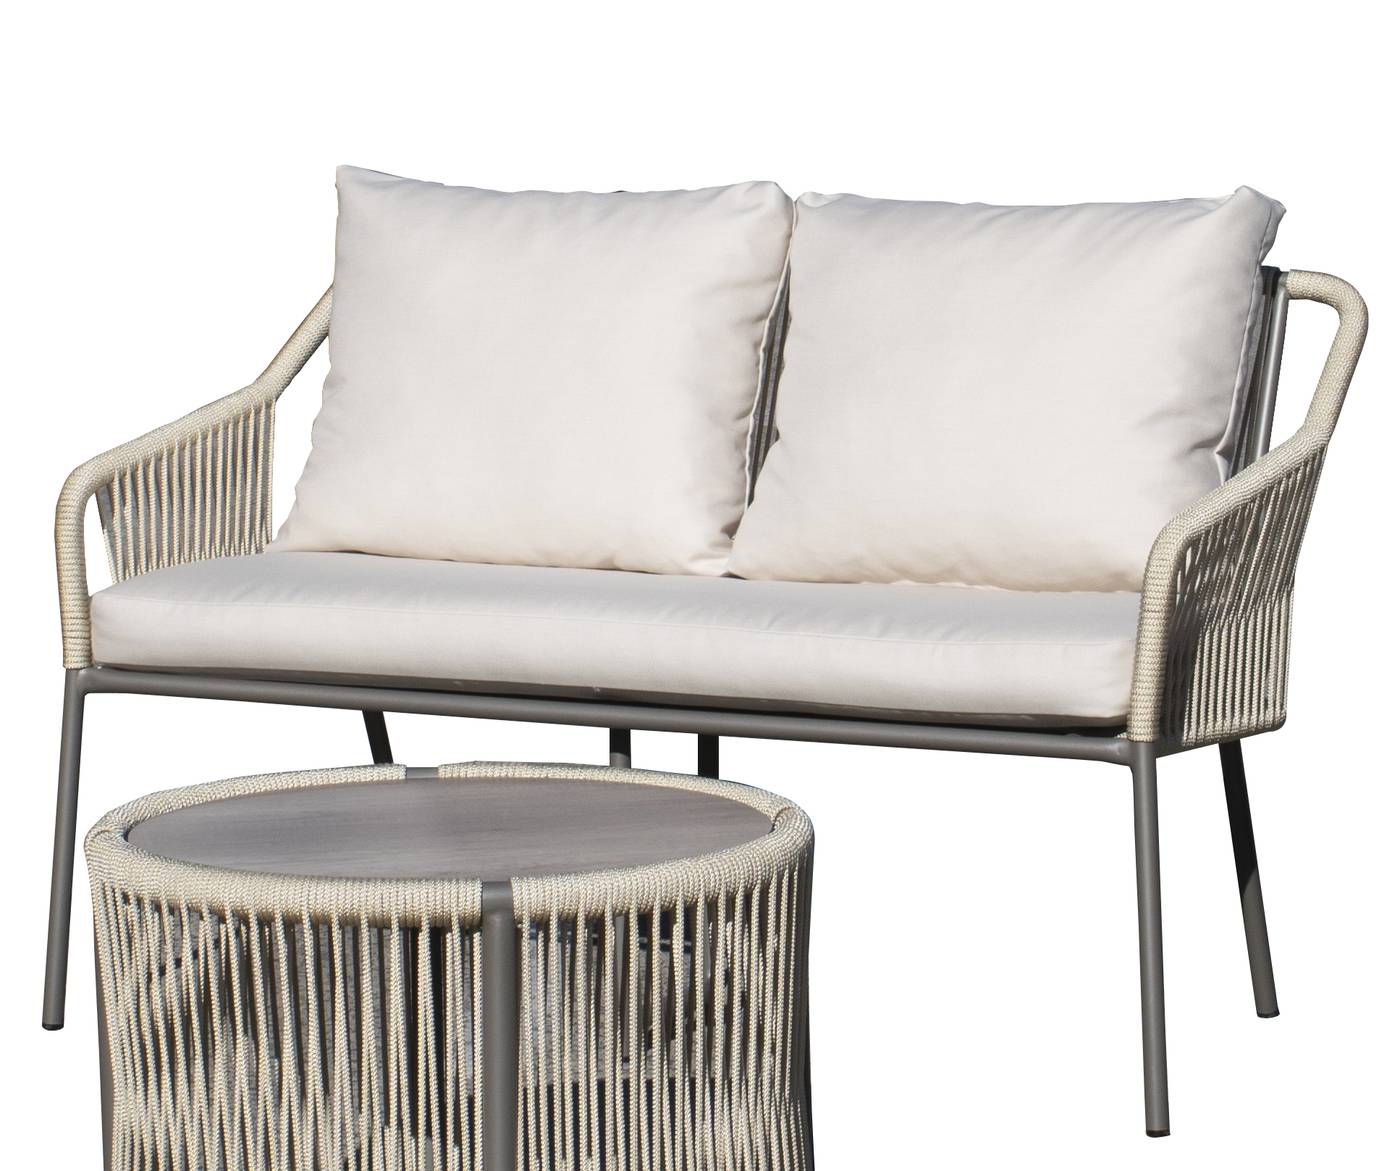 Set Cuerda Jasmyn - Conjunto aluminio color blanco, antracita o champagne con cuerda redonda: 1 sofá de 2 plazas + 2 sillones + 1 mesa de centro.